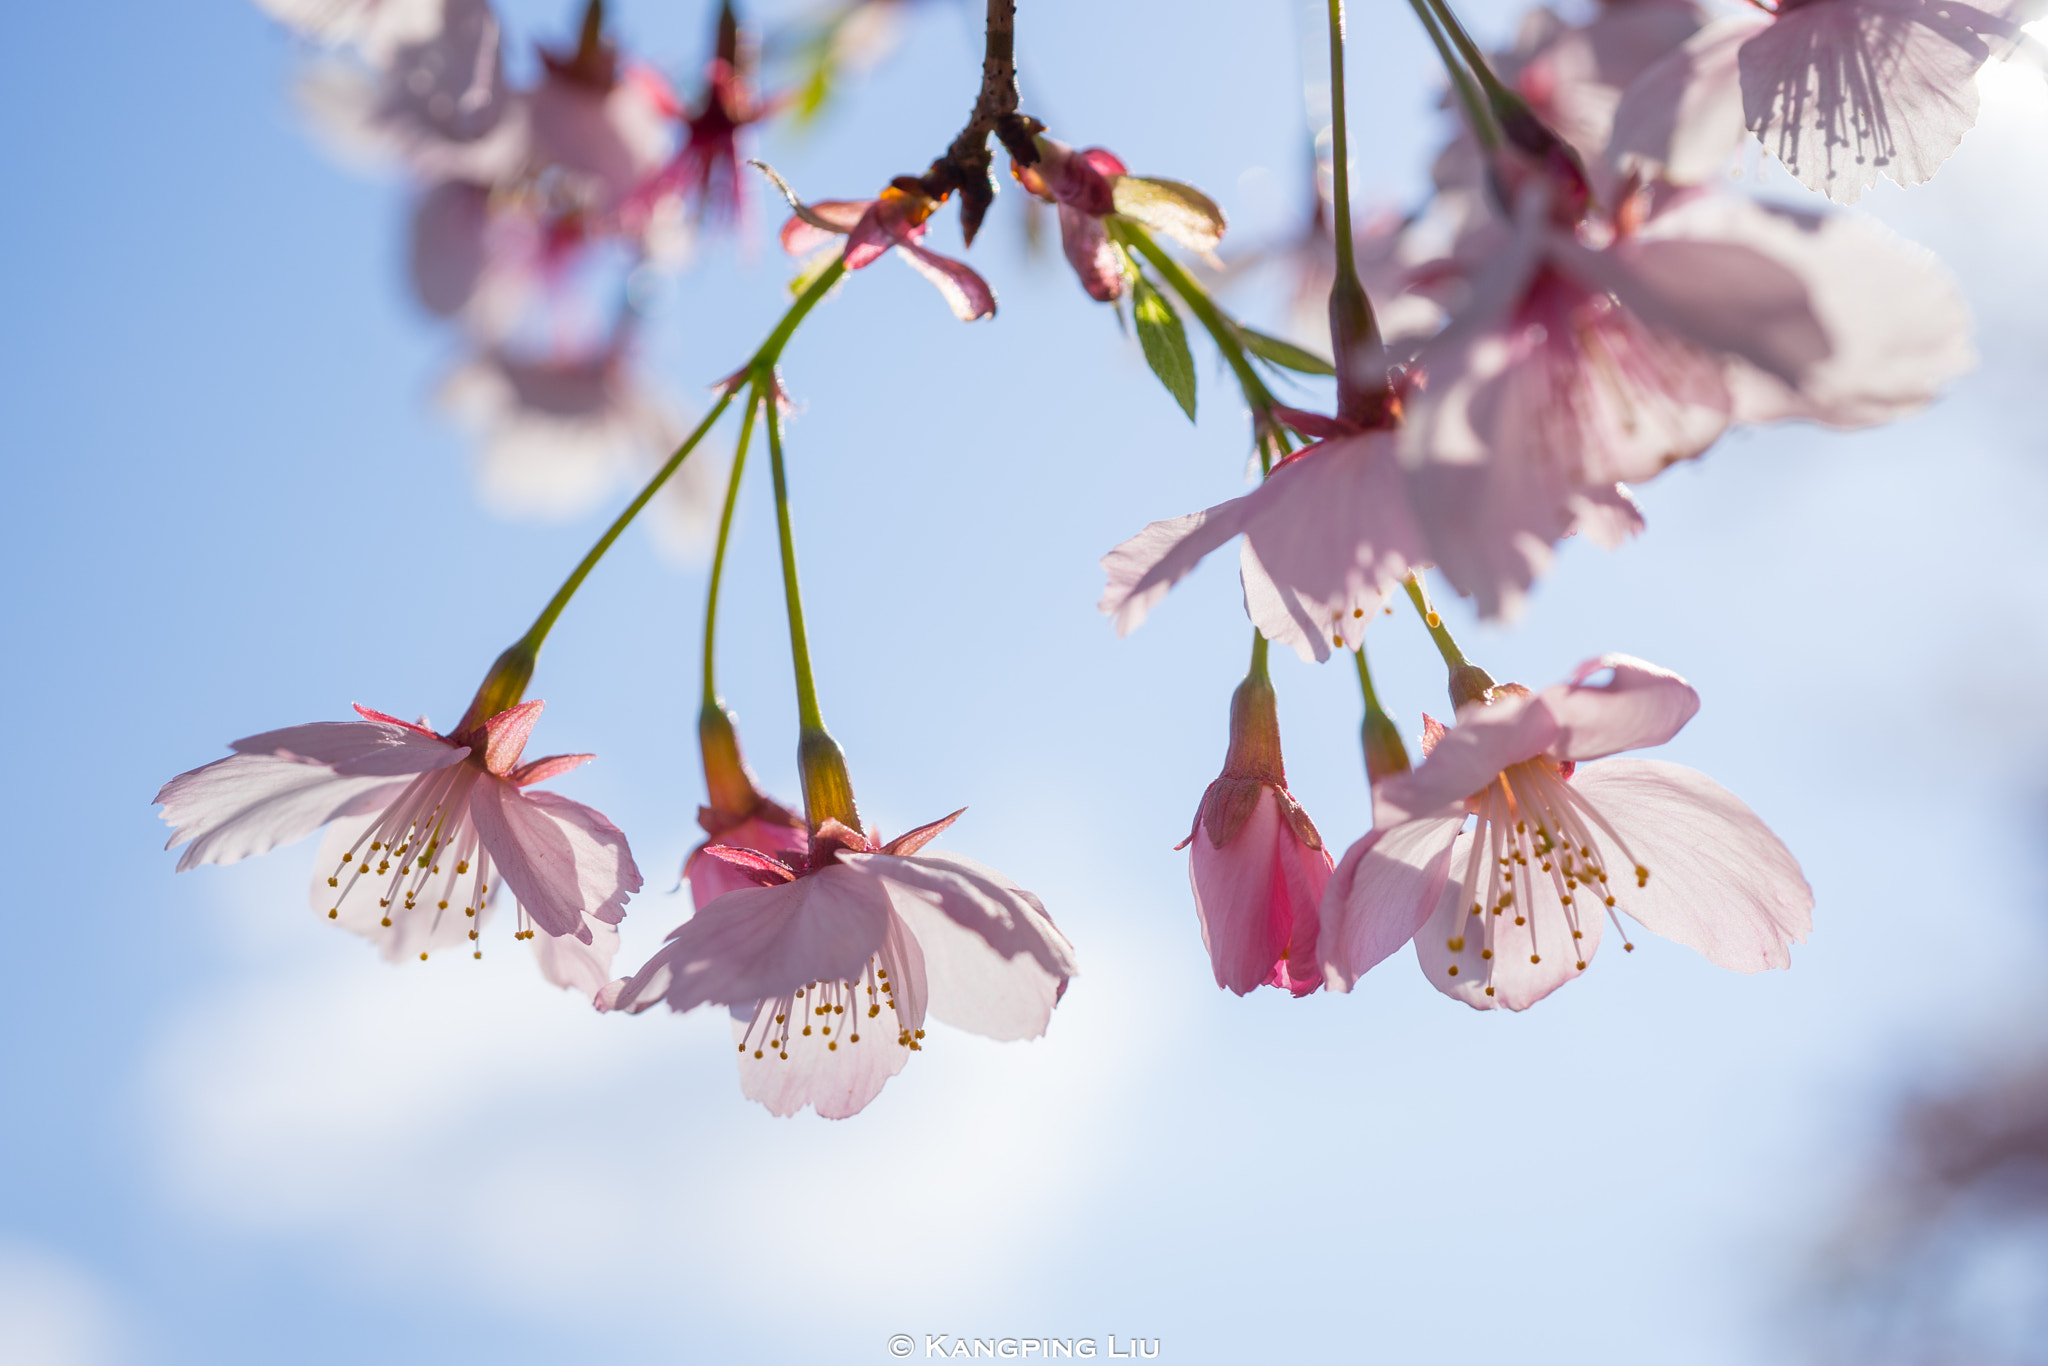 Sony a7 + Sony FE 50mm F2.8 Macro sample photo. Cherry blossom #2 photography